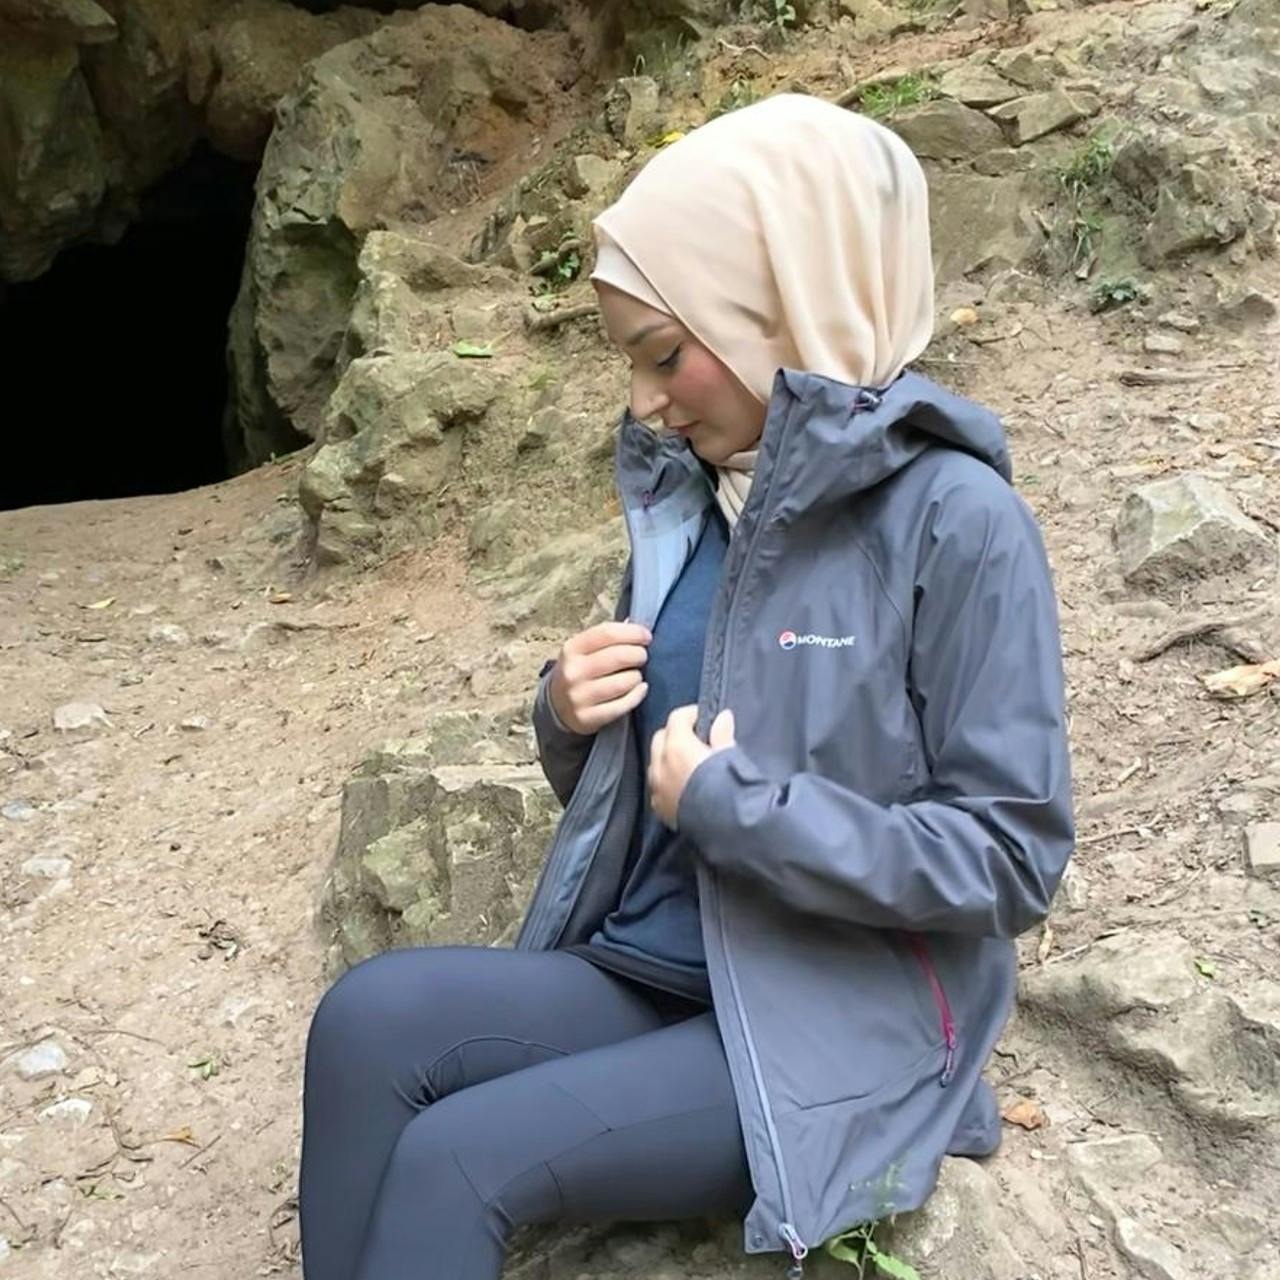 raadia-imran-montane-element-stretch-waterproof-jacket-hiking-walking-muslim-hikers